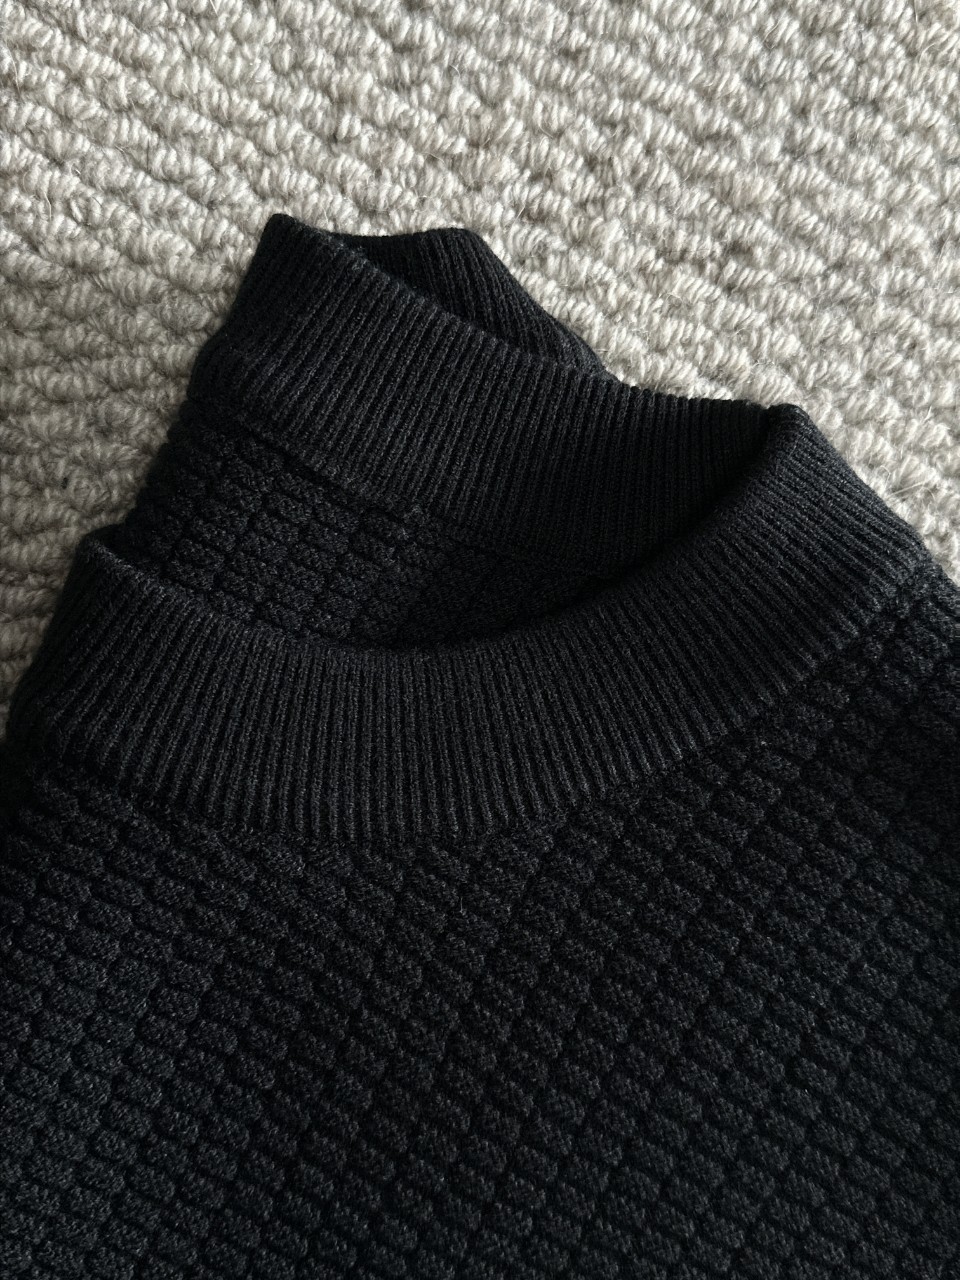 2023新登場のロエベセーターn級品 ラウンドネックセーター  羊毛混紡素材_3